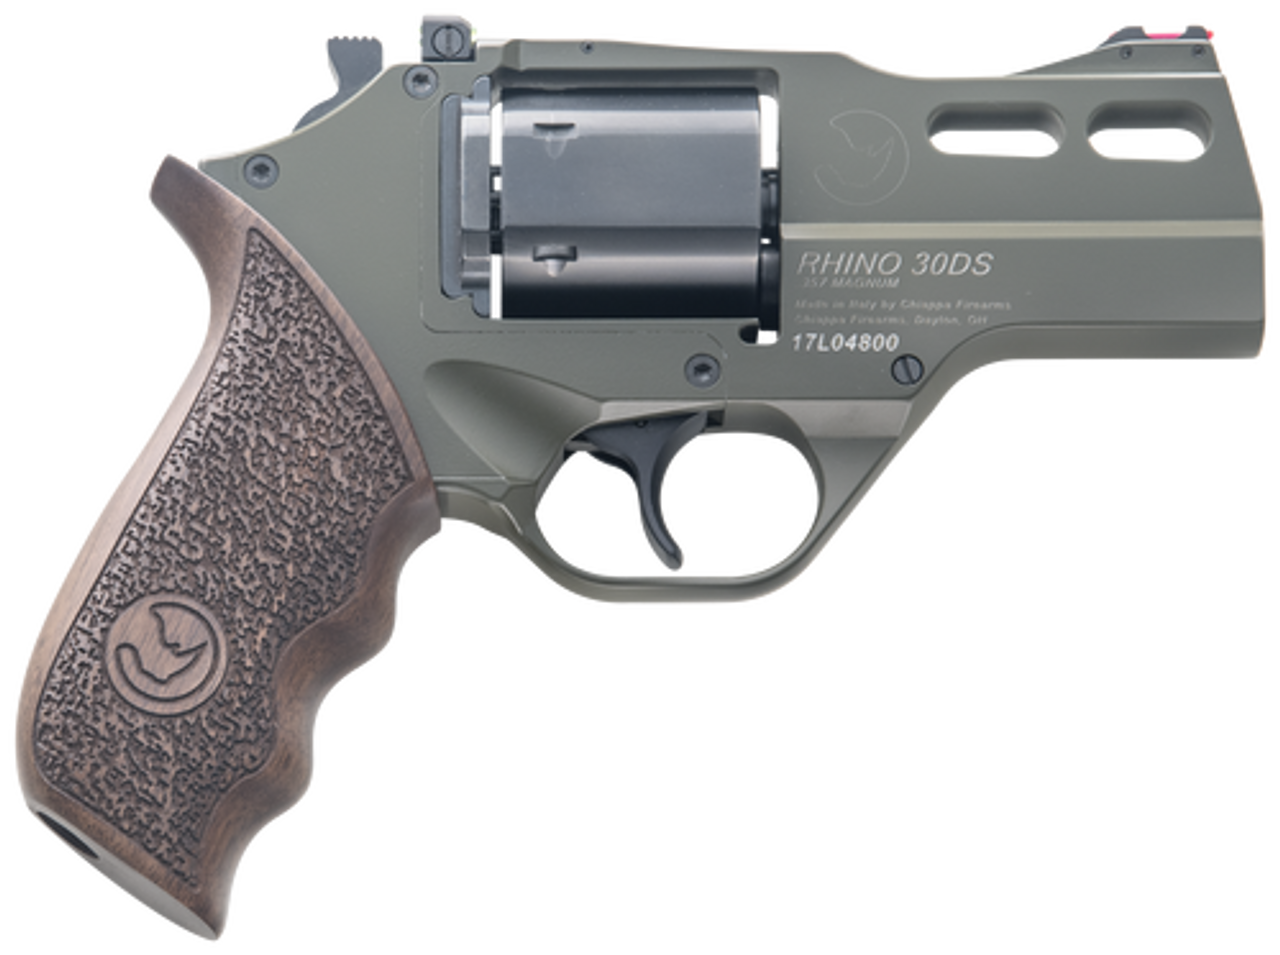 BO Manufacture Chiappa Rhino Revolver 50DS .357 Magnum Airsoft Pistol (  Silver )